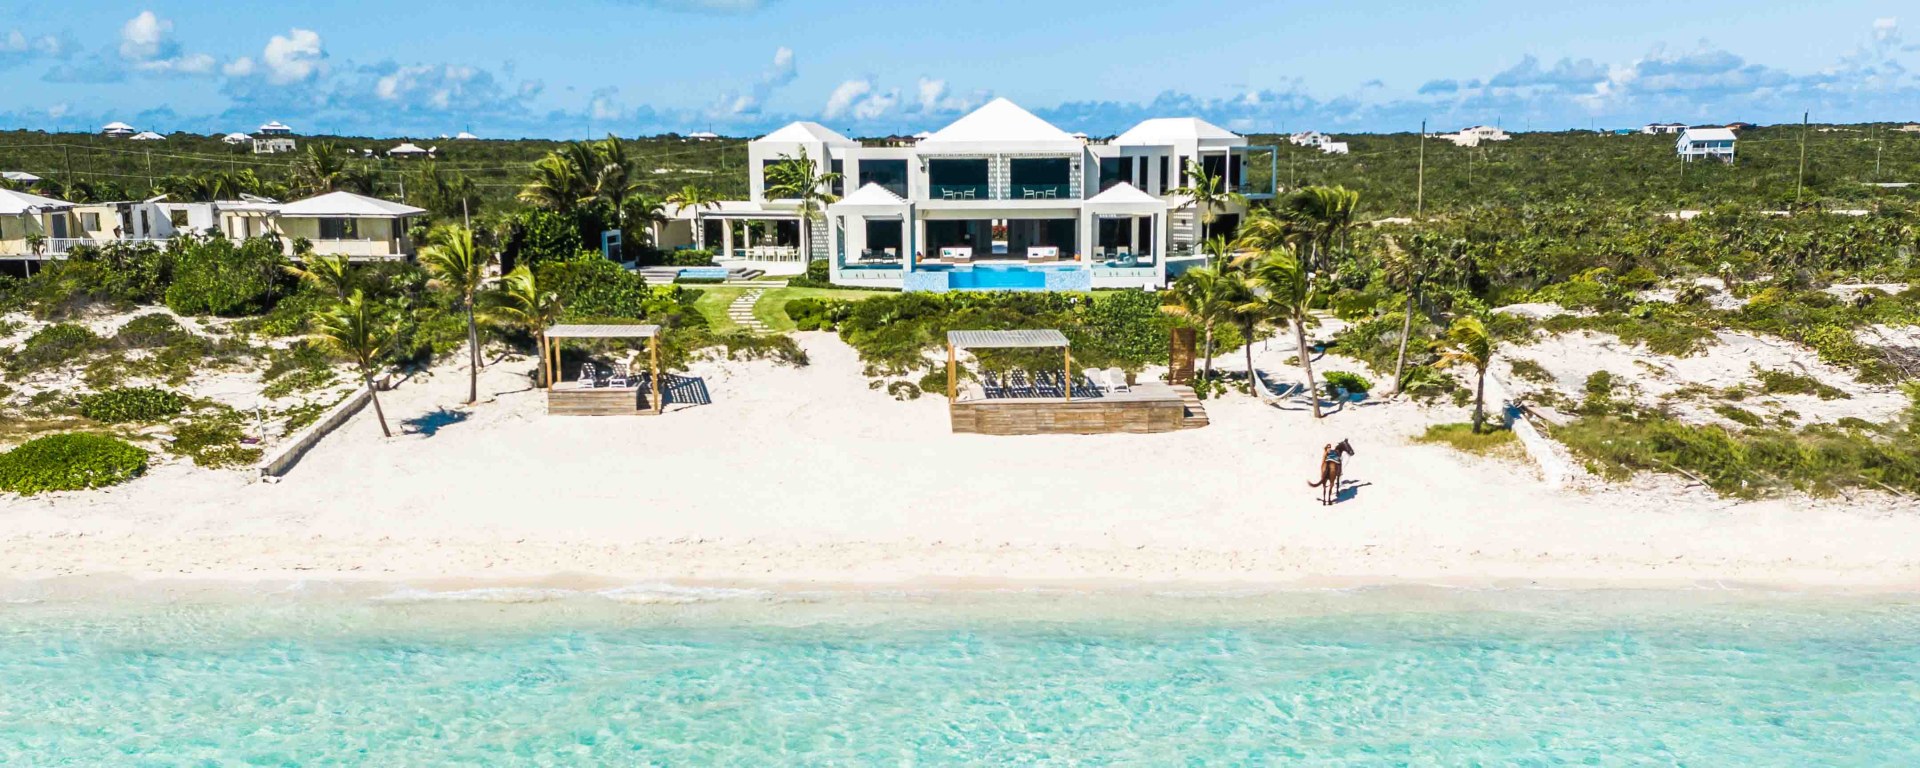 Luxus Ferienhaus Karibik Am Strand